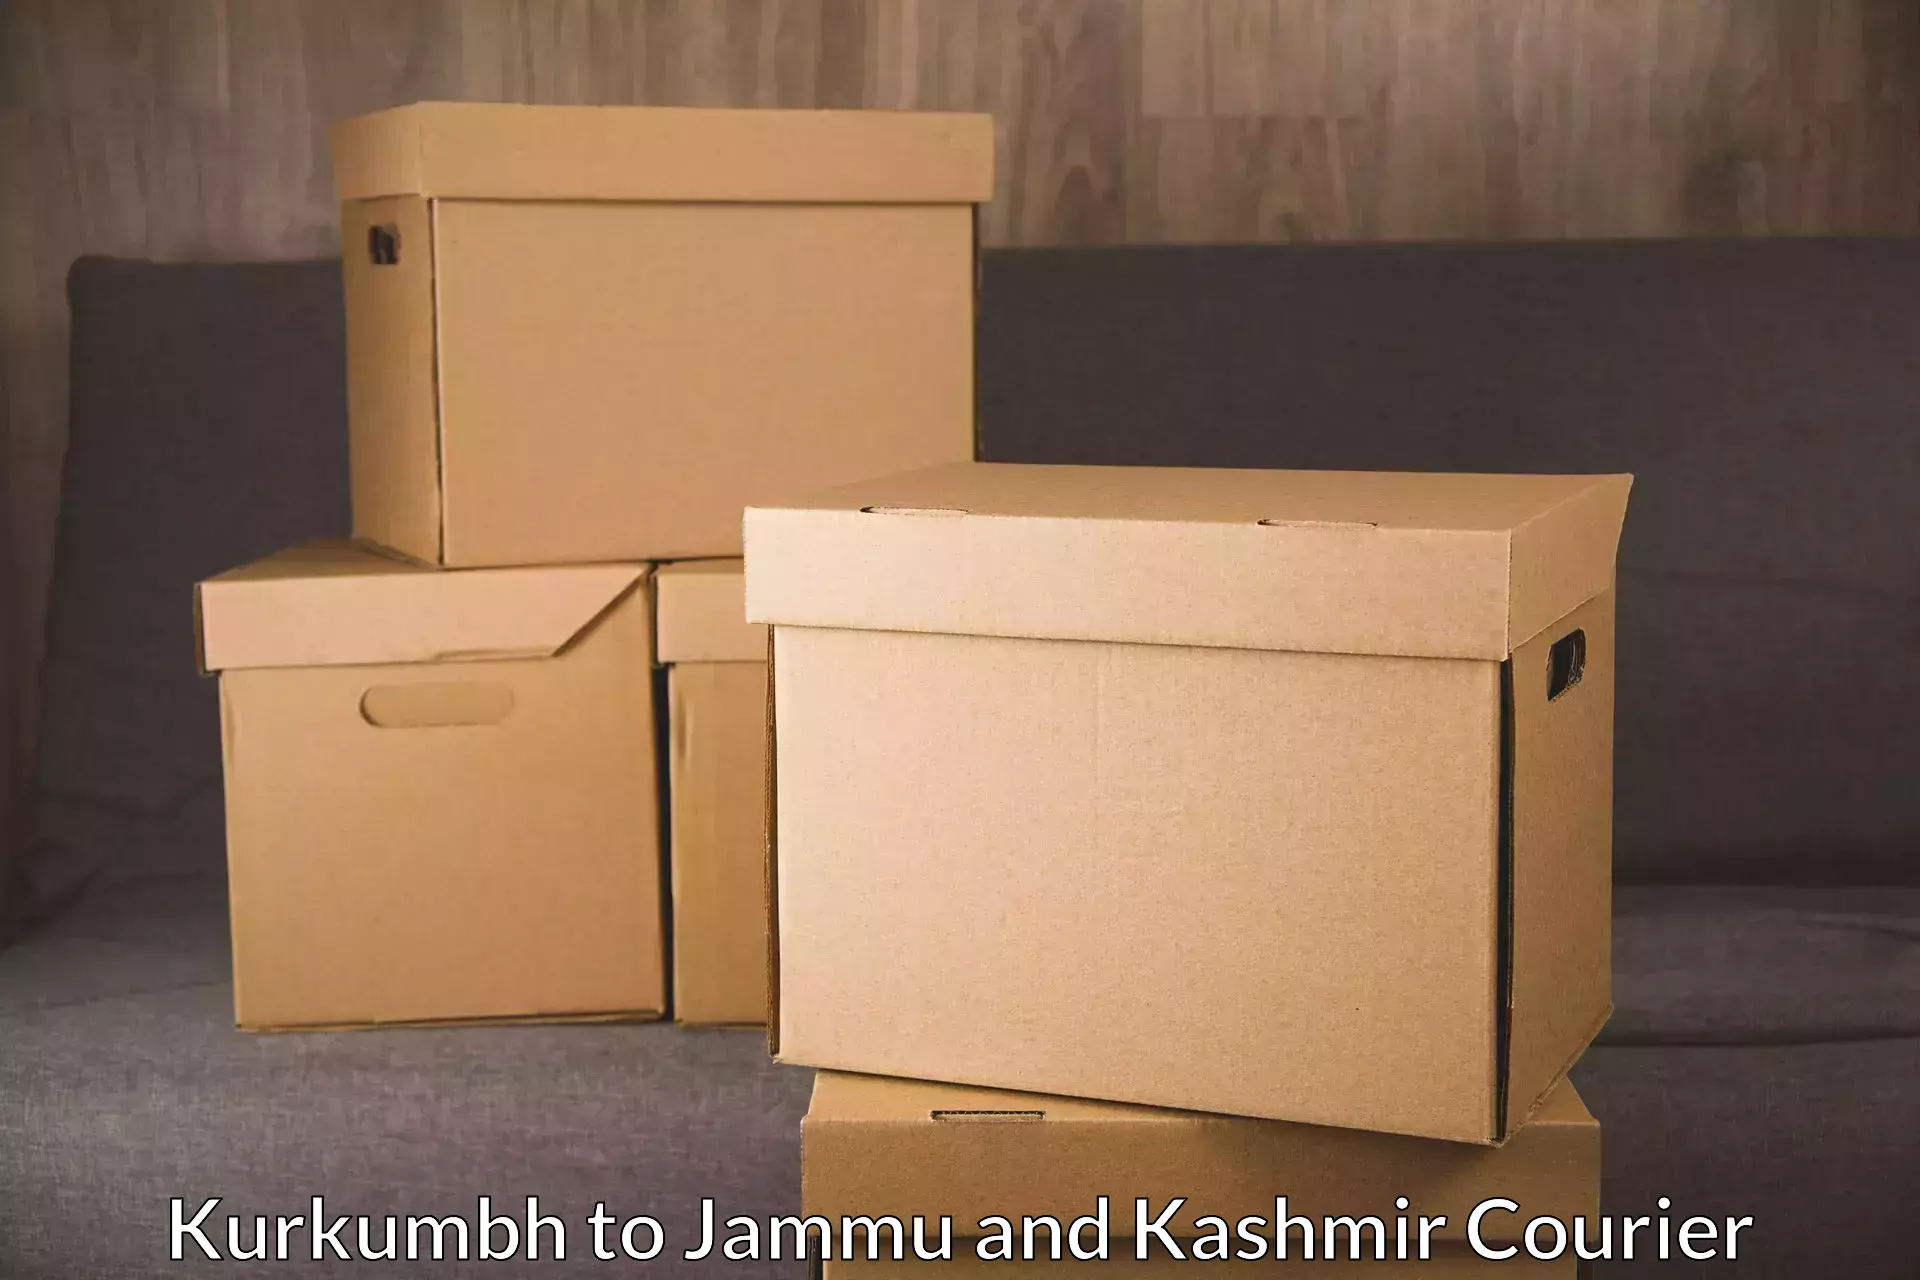 Urgent courier needs Kurkumbh to Baramulla